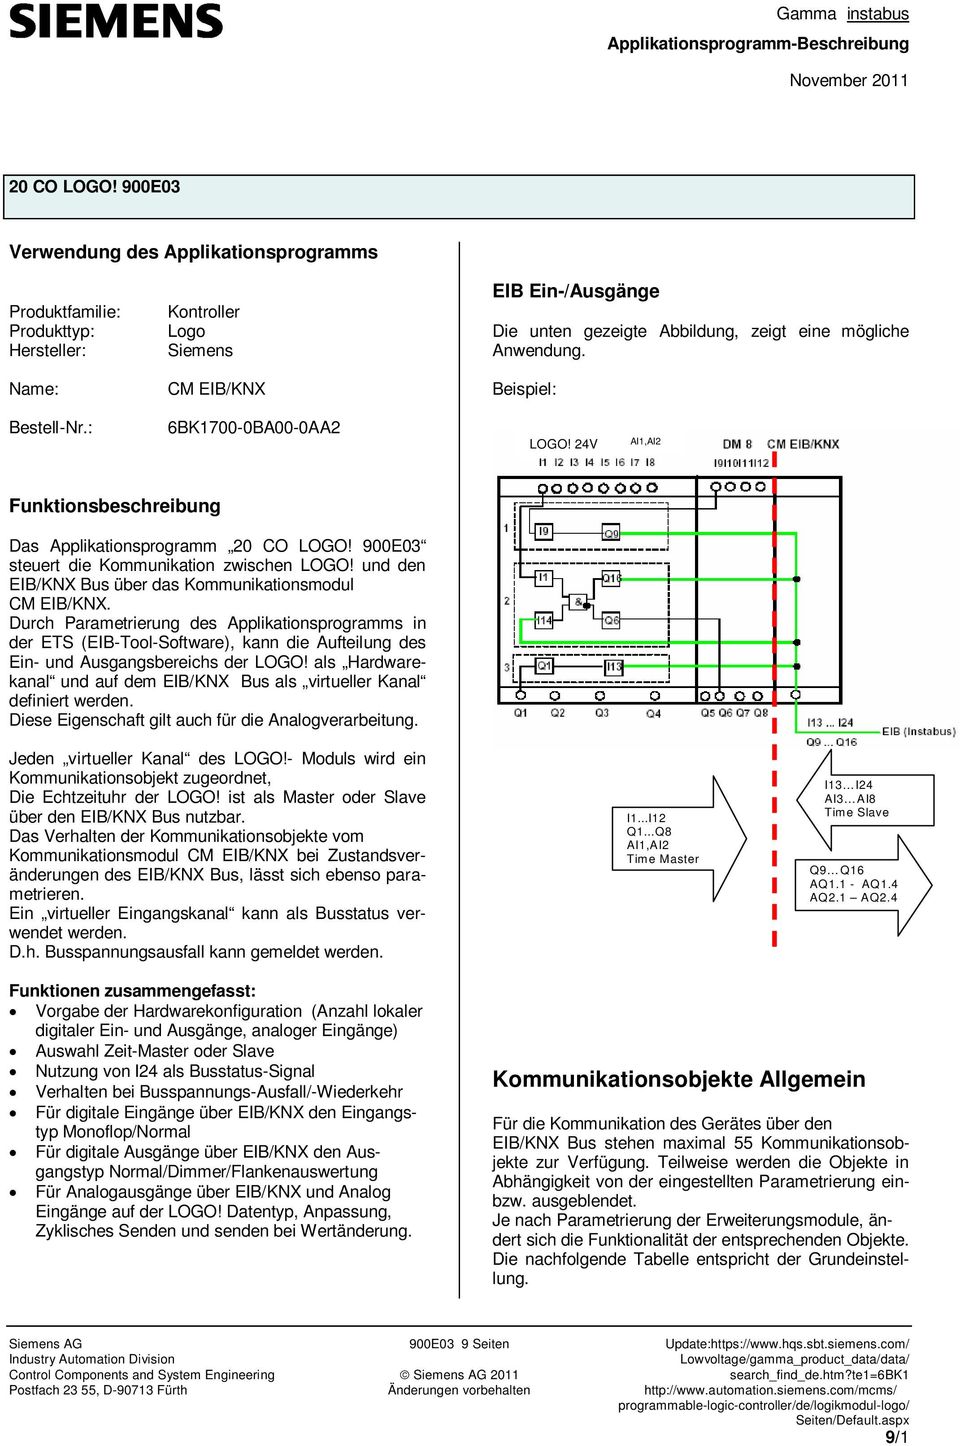 und den EIB/KNX Bus über das Kommunikationsmodul CM EIB/KNX. Durch Parametrierung des Applikationsprogramms in der ETS (Tool-Software), kann die Aufteilung des Ein- und Ausgangsbereichs der LOGO!